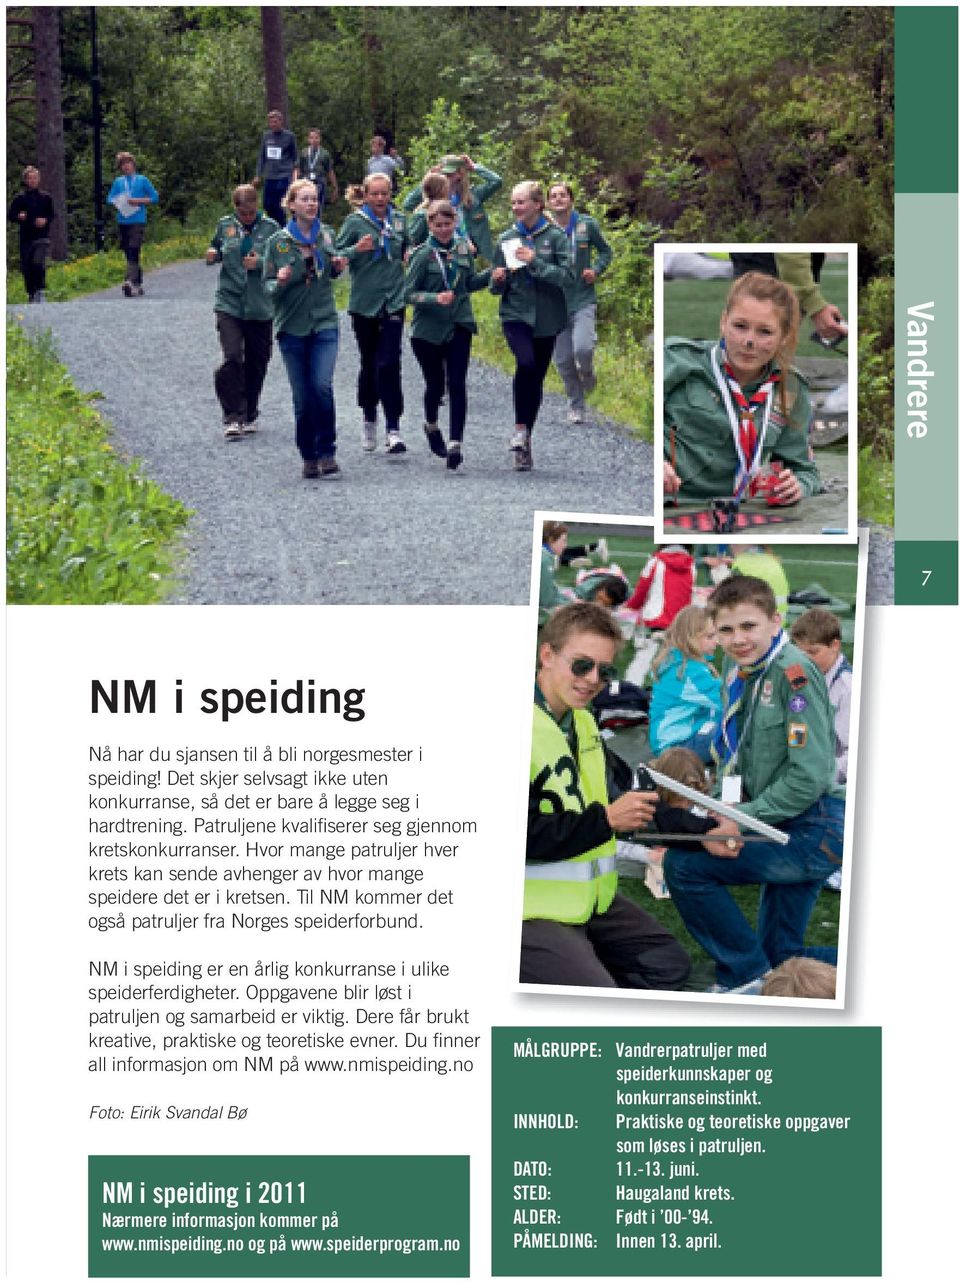 Til NM kommer det også patruljer fra Norges speiderforbund. NM i speiding er en årlig konkurranse i ulike speiderferdigheter. Oppgavene blir løst i patruljen og samarbeid er viktig.